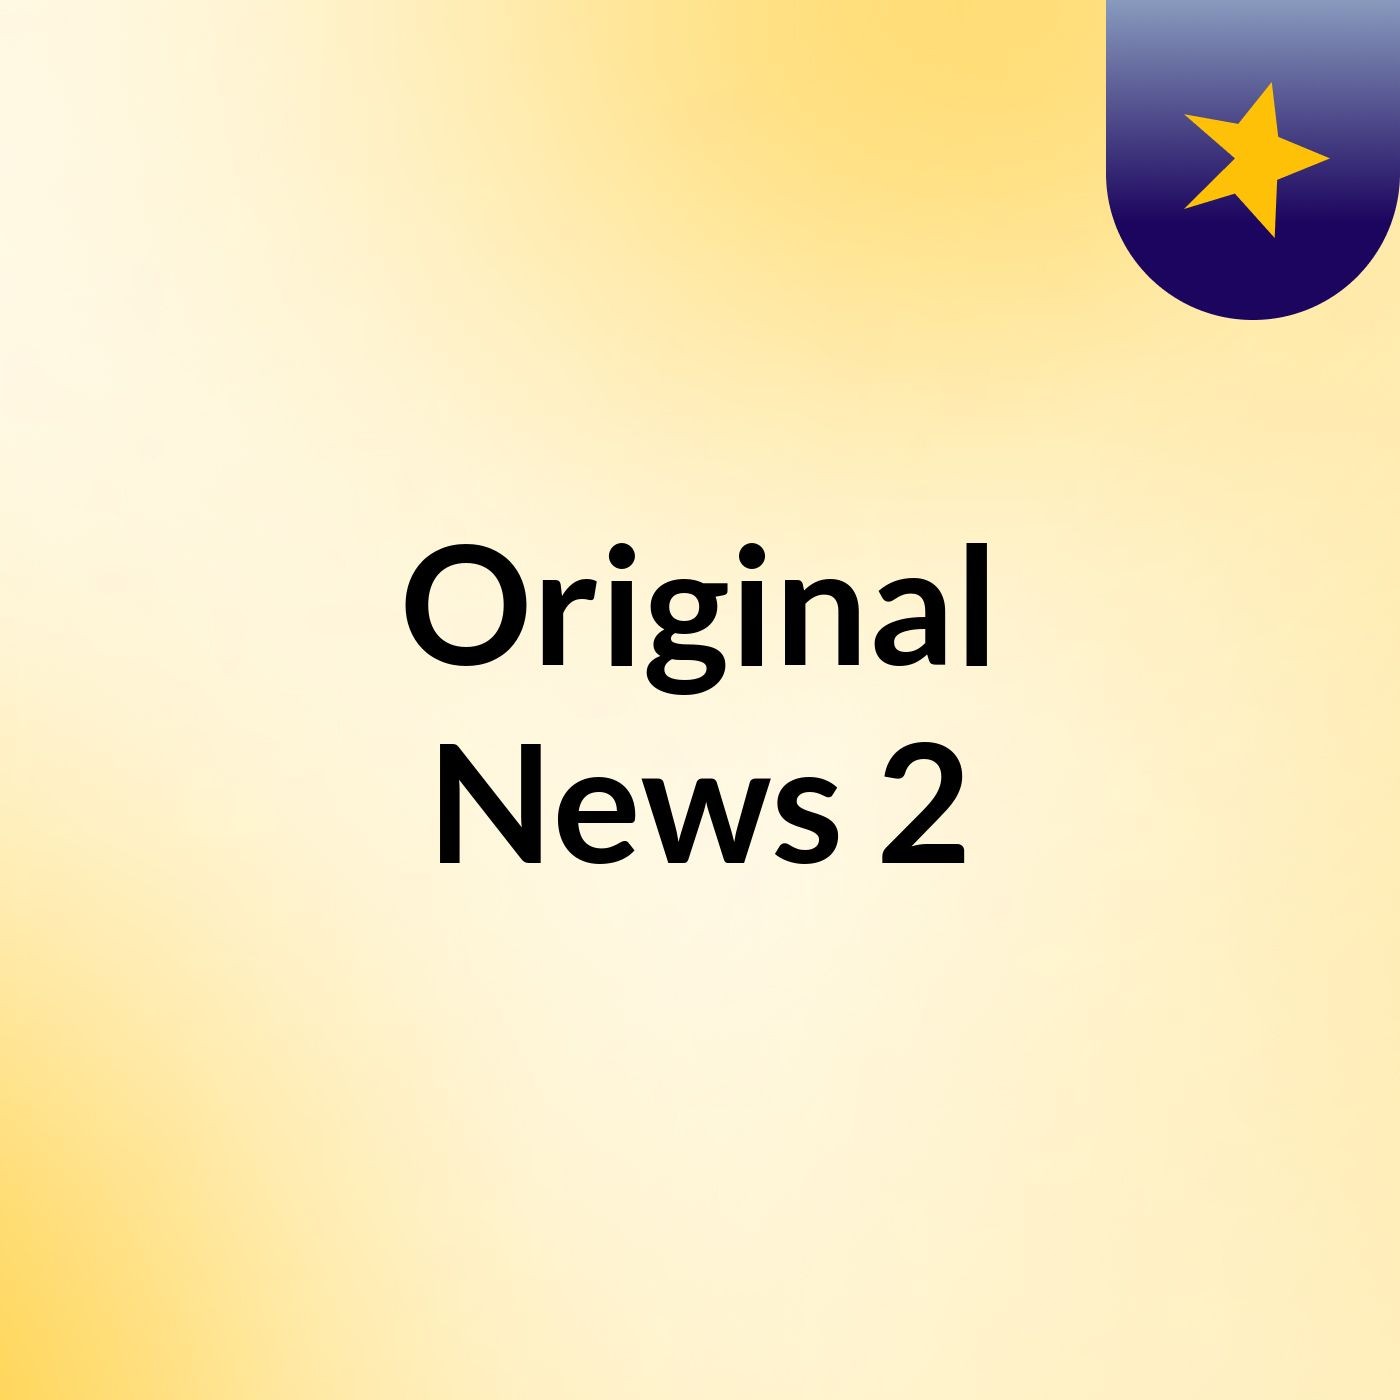 Original News 2